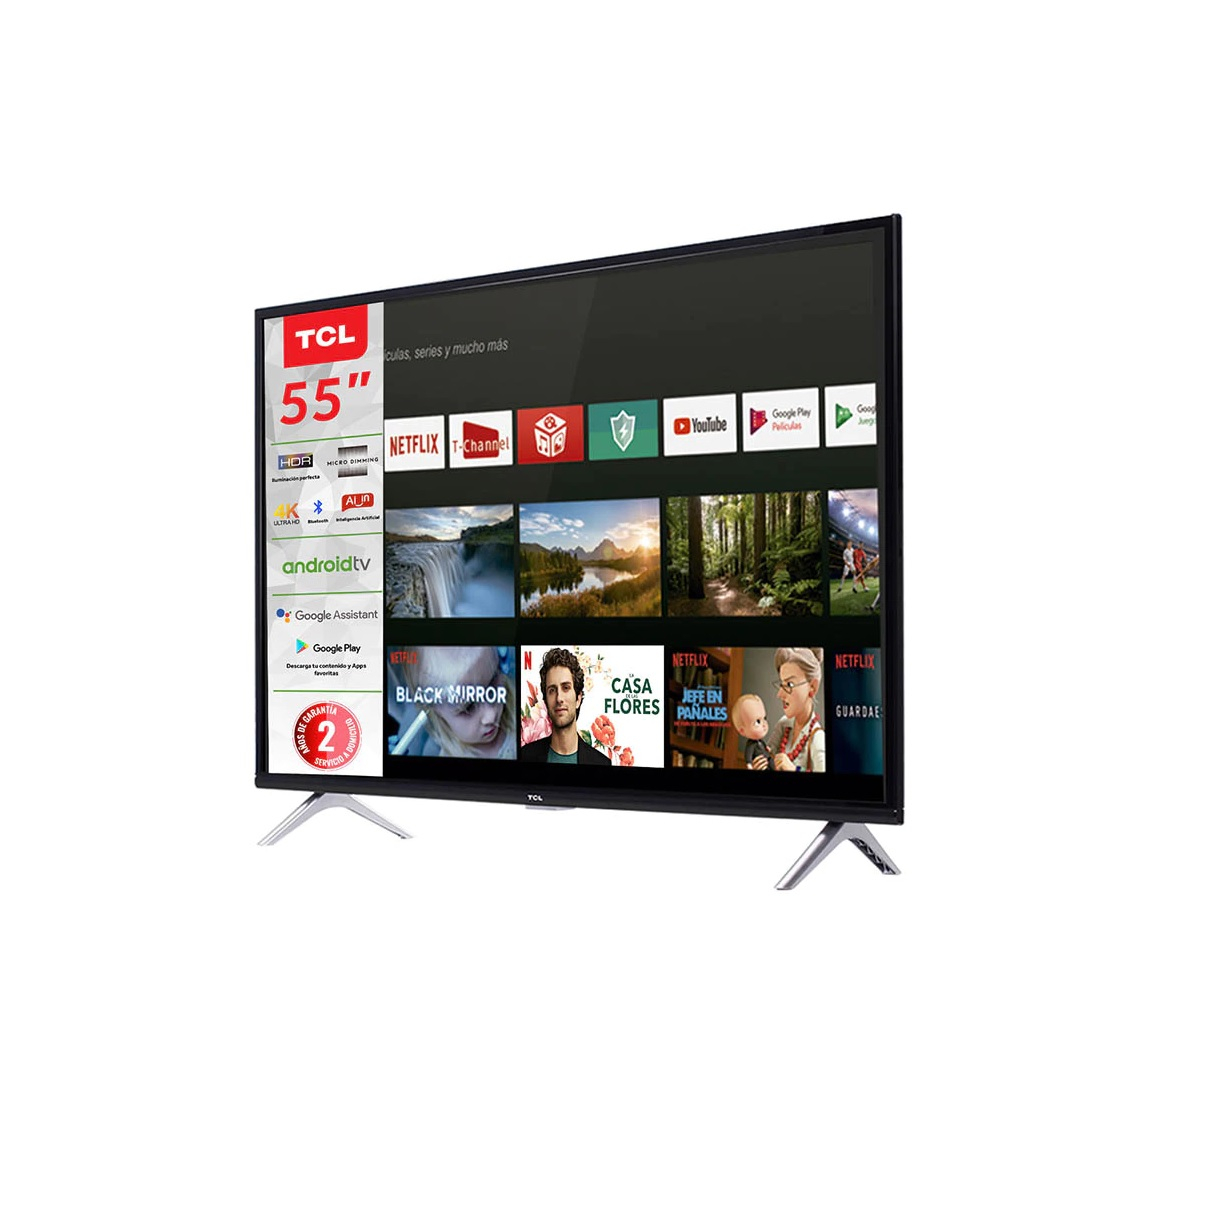 Pantalla TCL LED Smart TV de 55 pulgadas 4K/Ultra HD 55A435